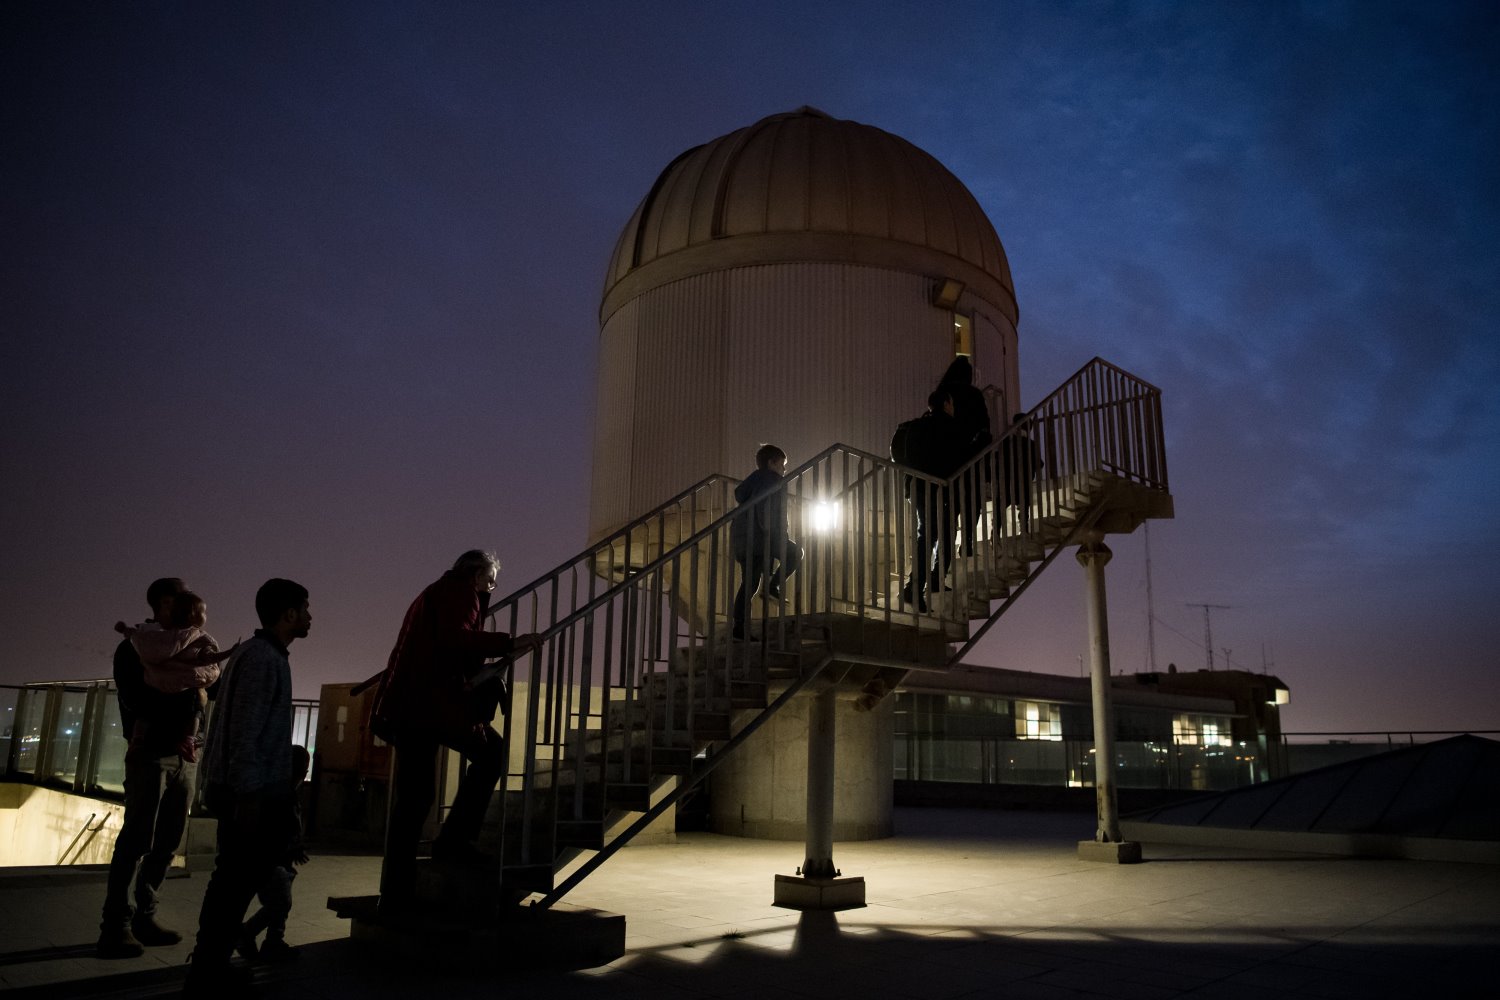 עולים אל מצפה הכוכבים. צילום: דני מכליס, אוניברסיטת בן-גוריון